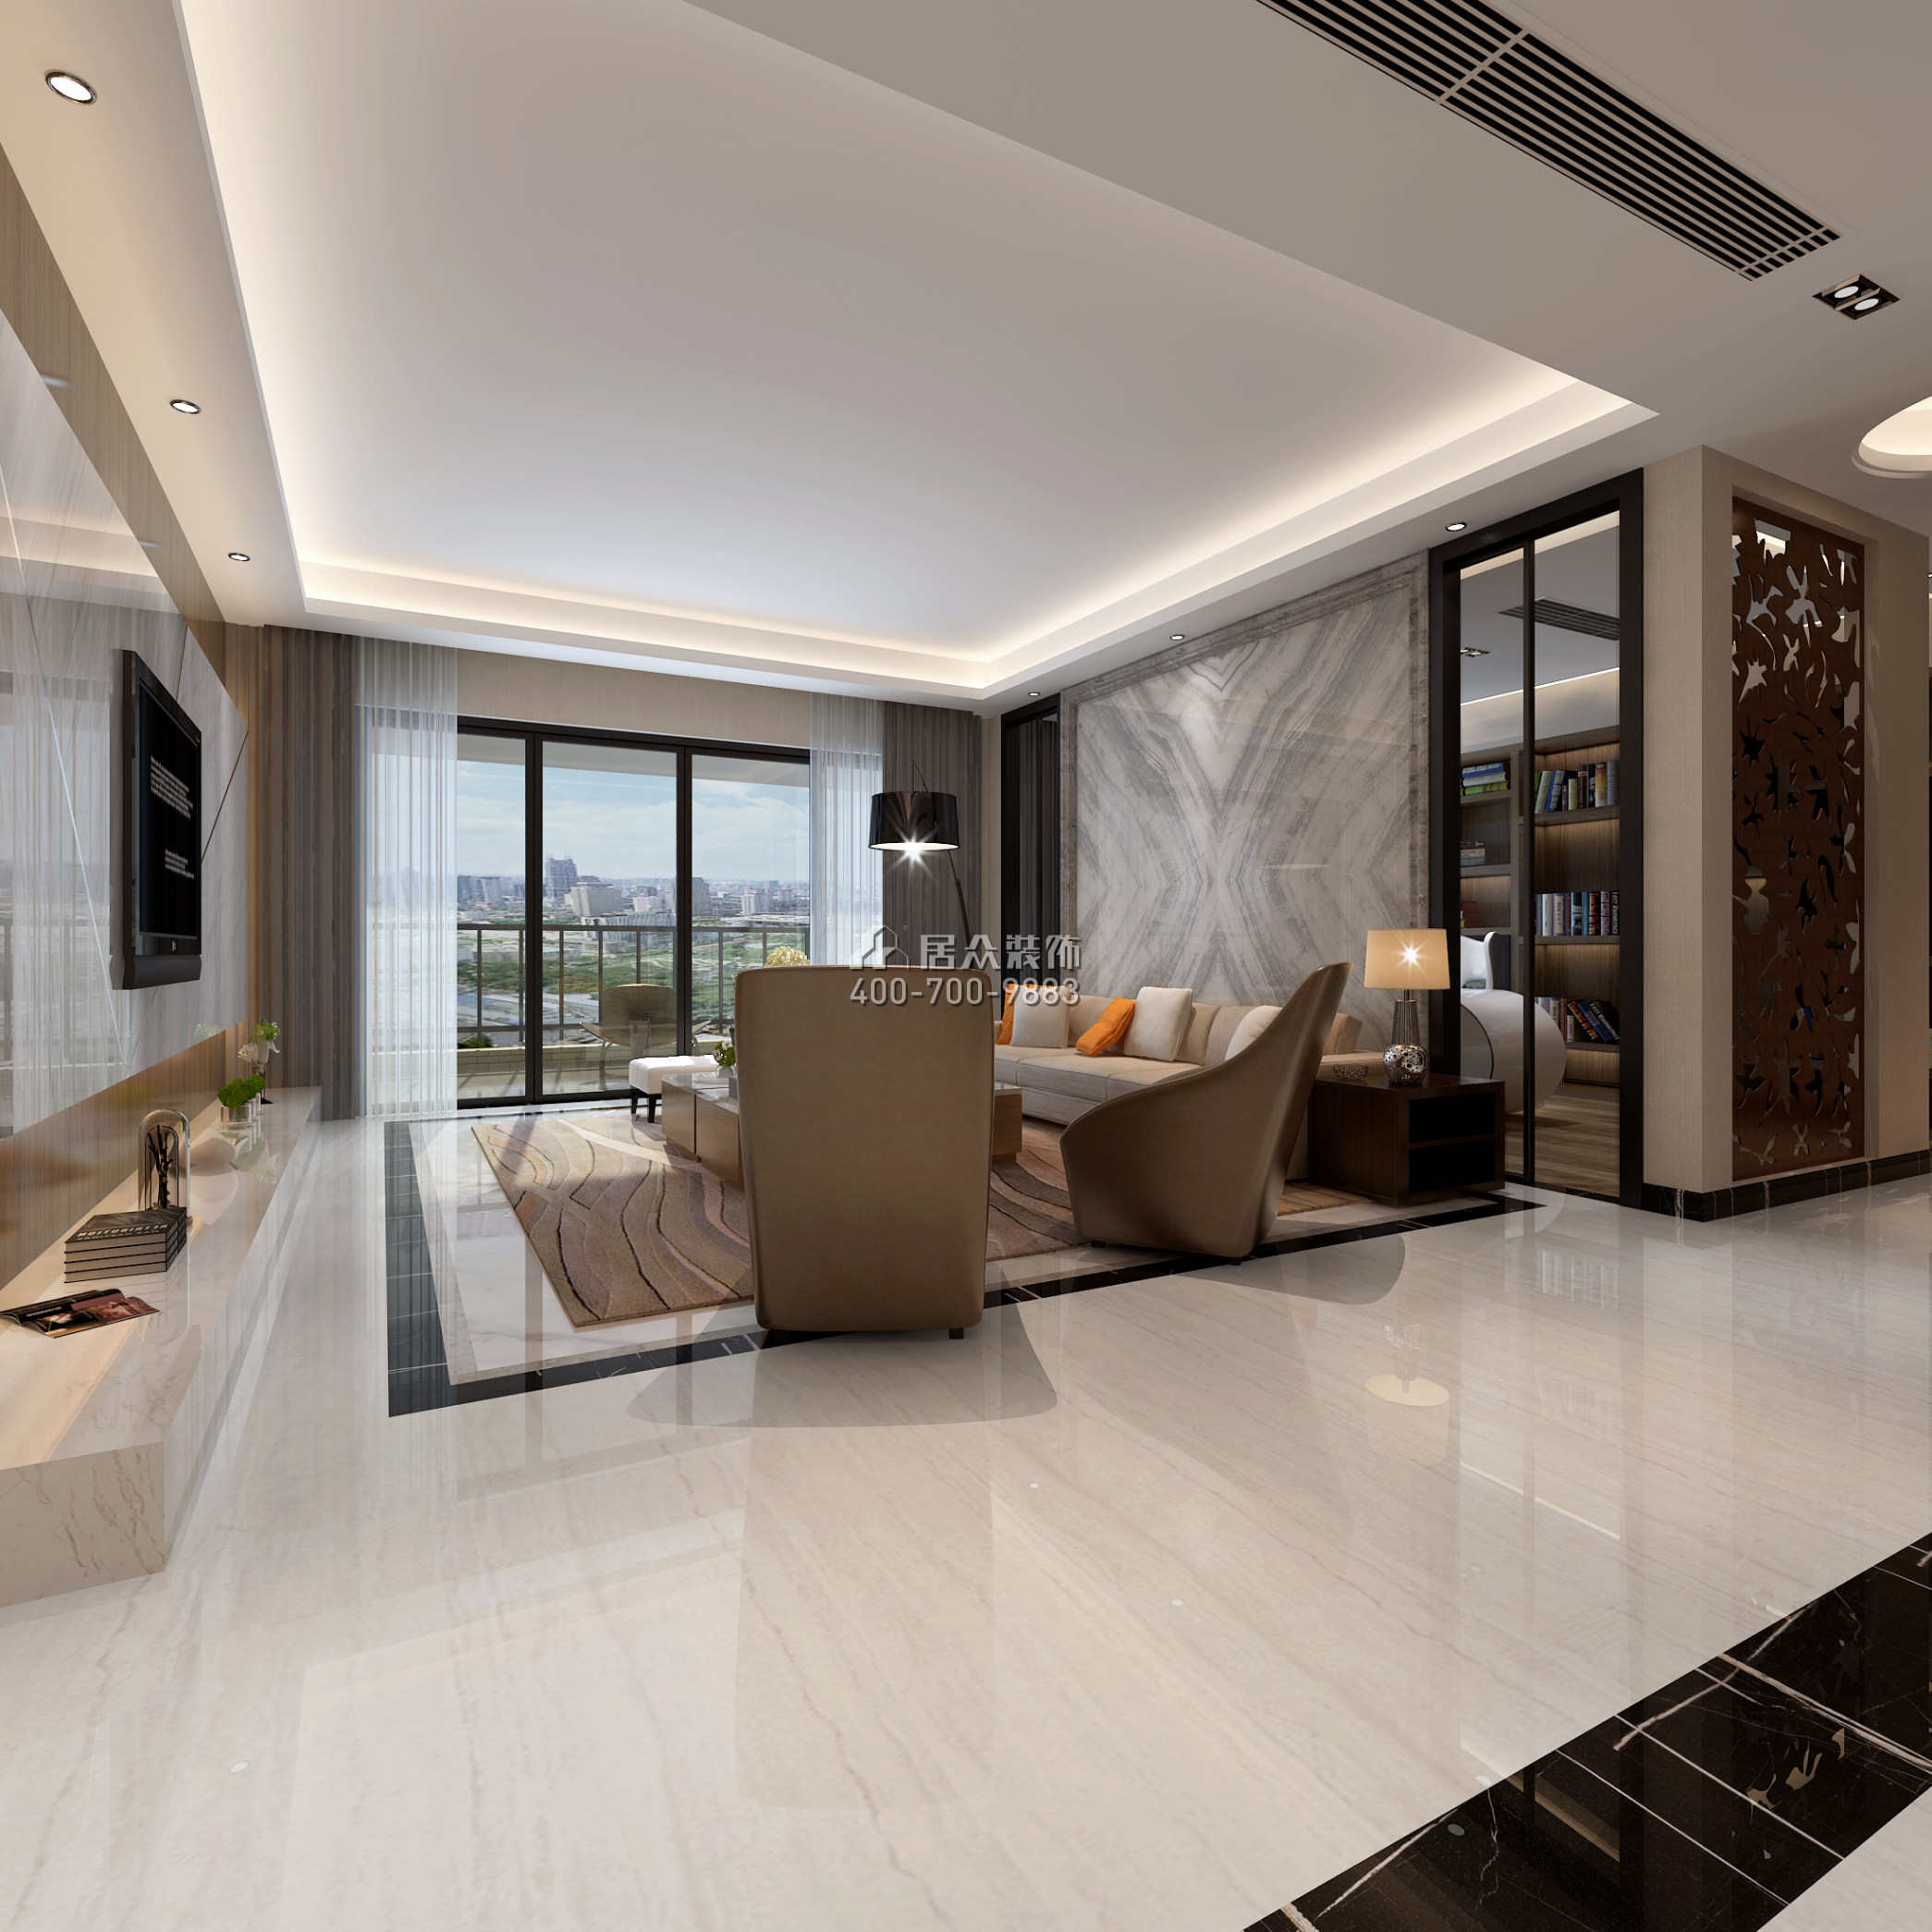 万科金域滨江250平方米现代简约风格平层户型客厅装修效果图